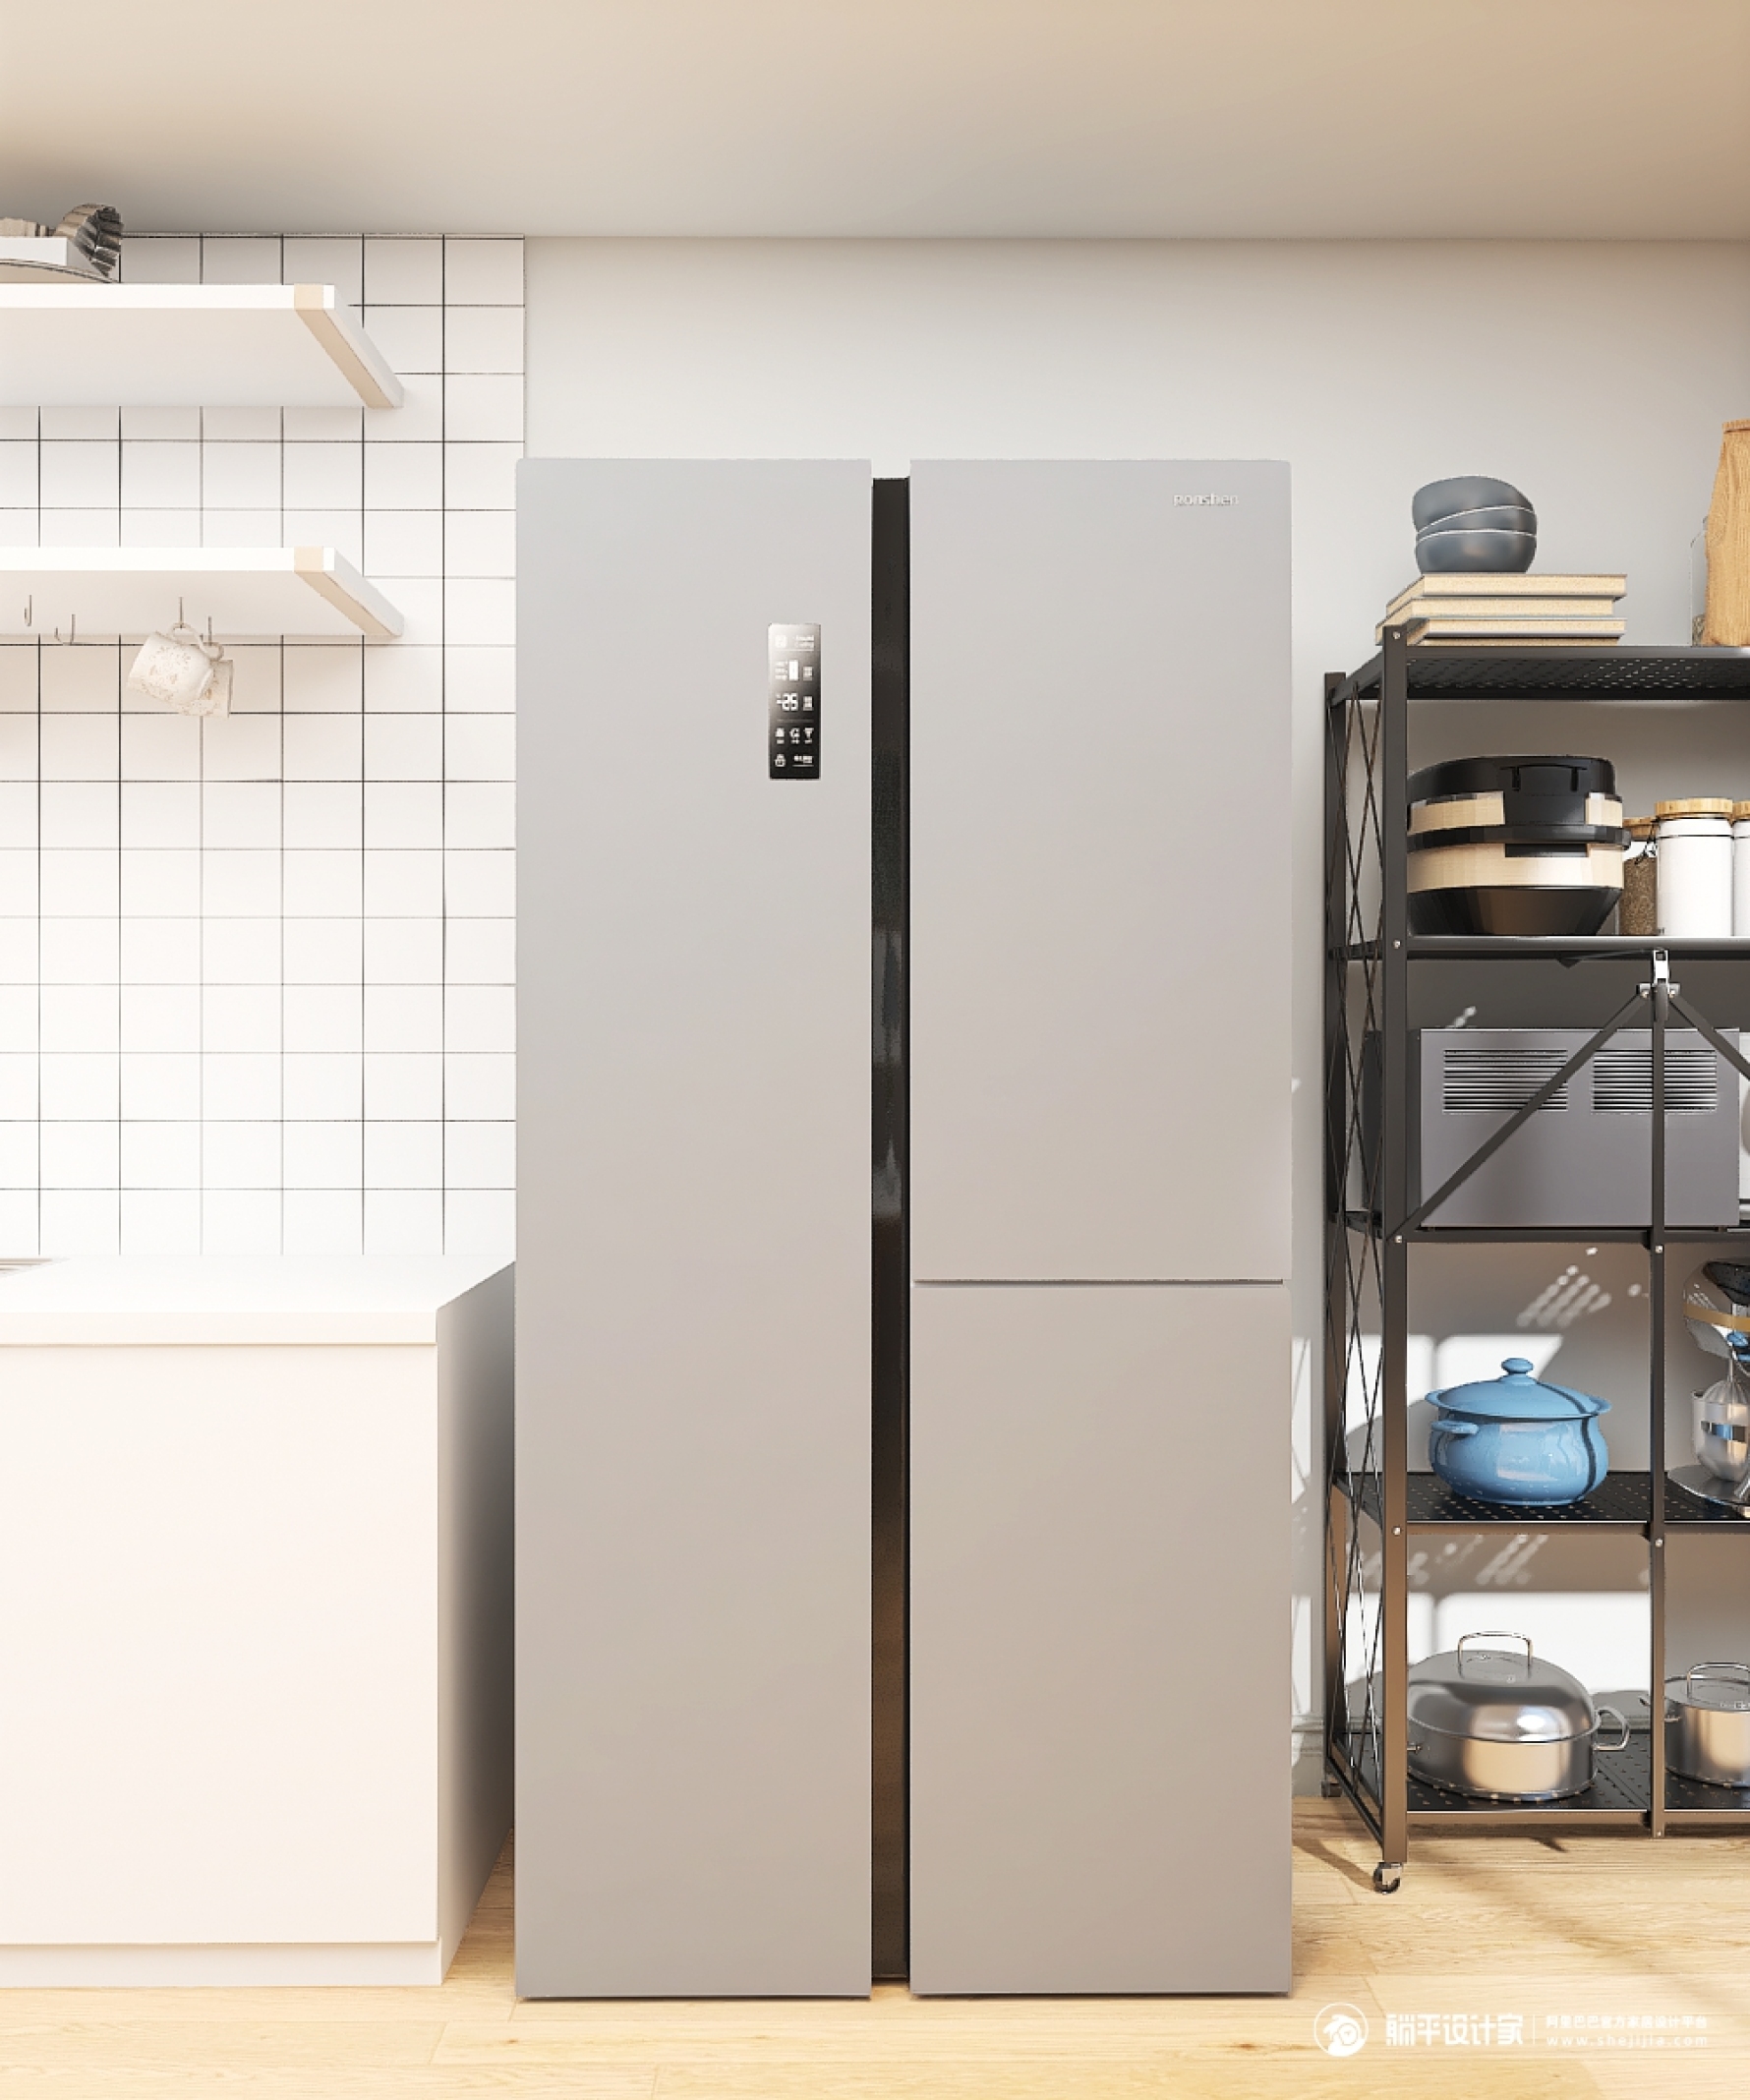 让家更整洁大方的全嵌入式冰箱 - 居家集设计效果图 - 每平每屋·设计家